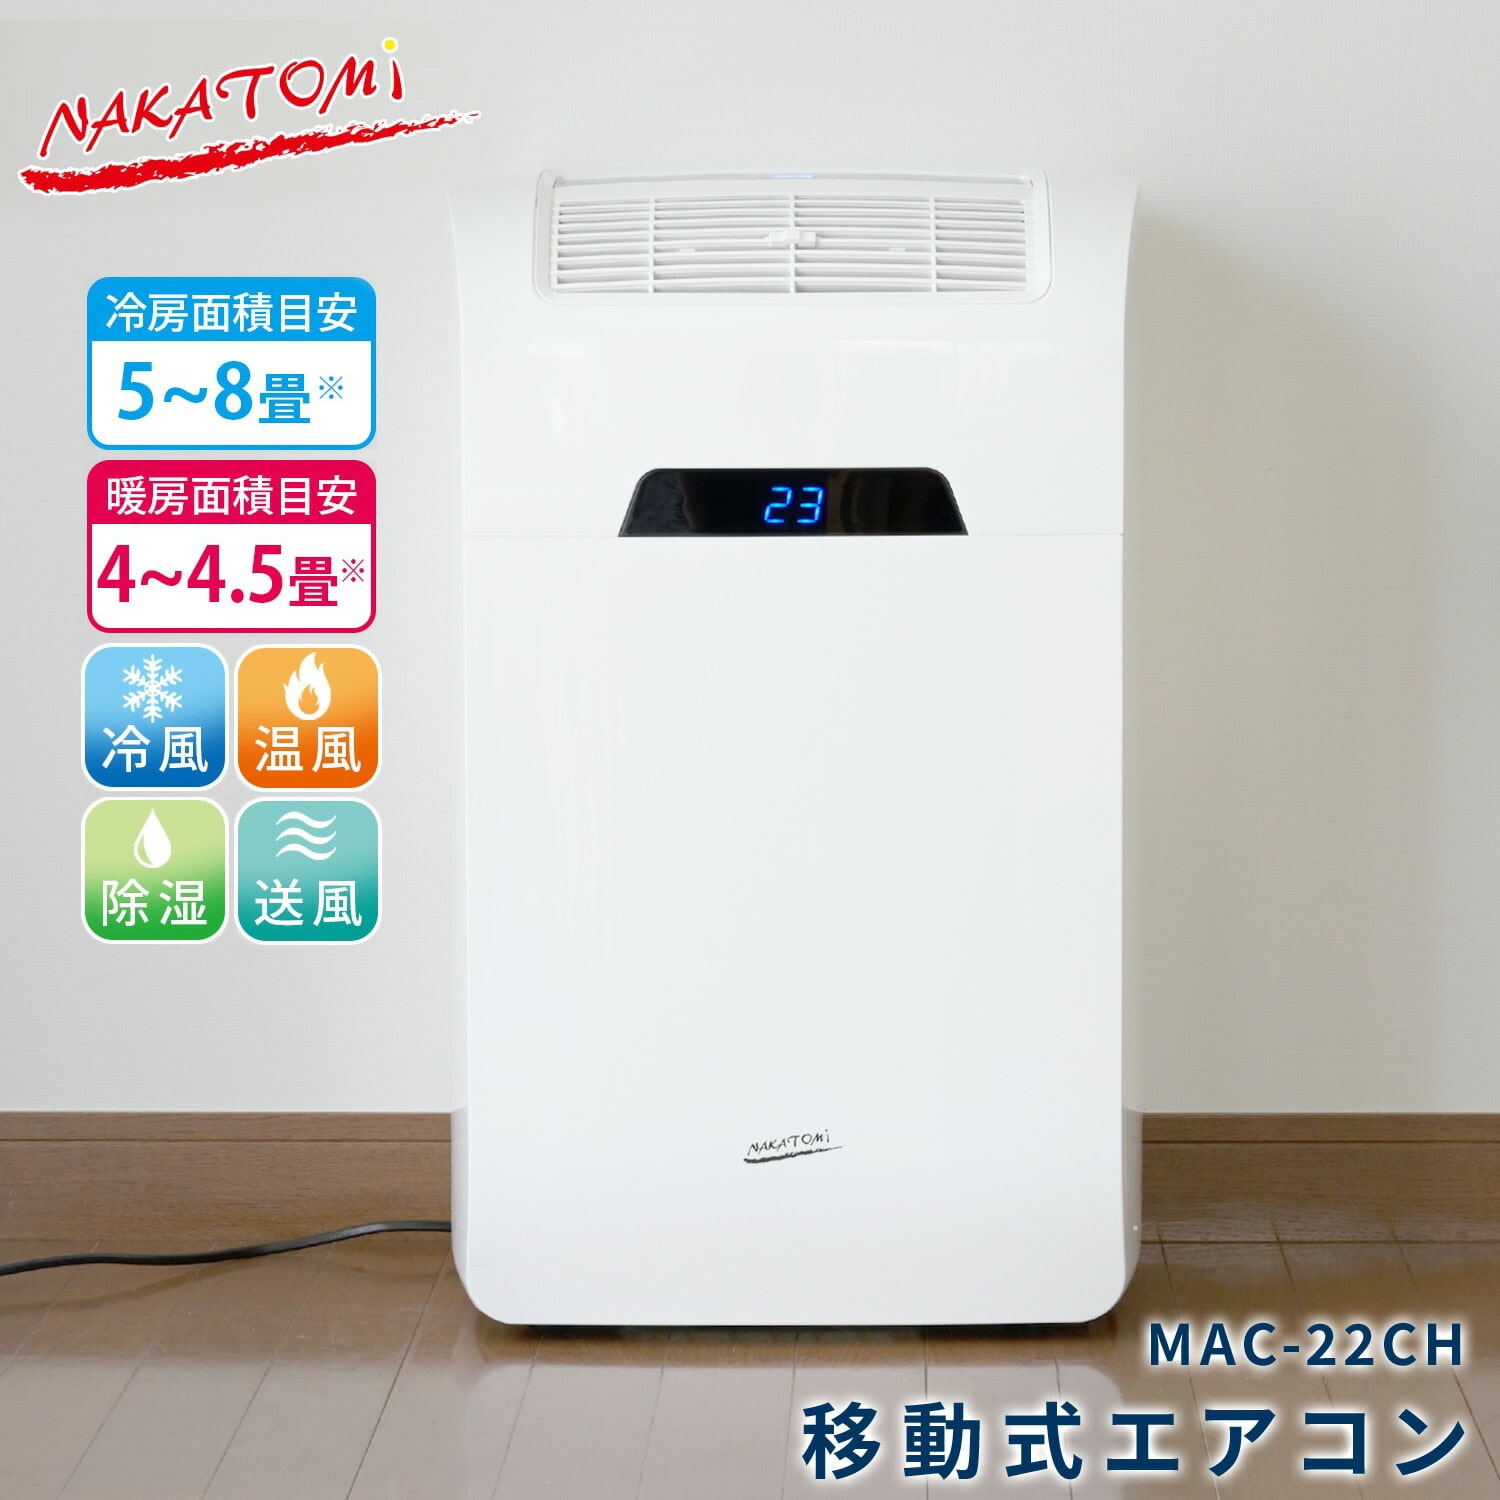 移動式エアコン 冷房 暖房 MAC-22CH ナカトミ | 山善ビズコム オフィス